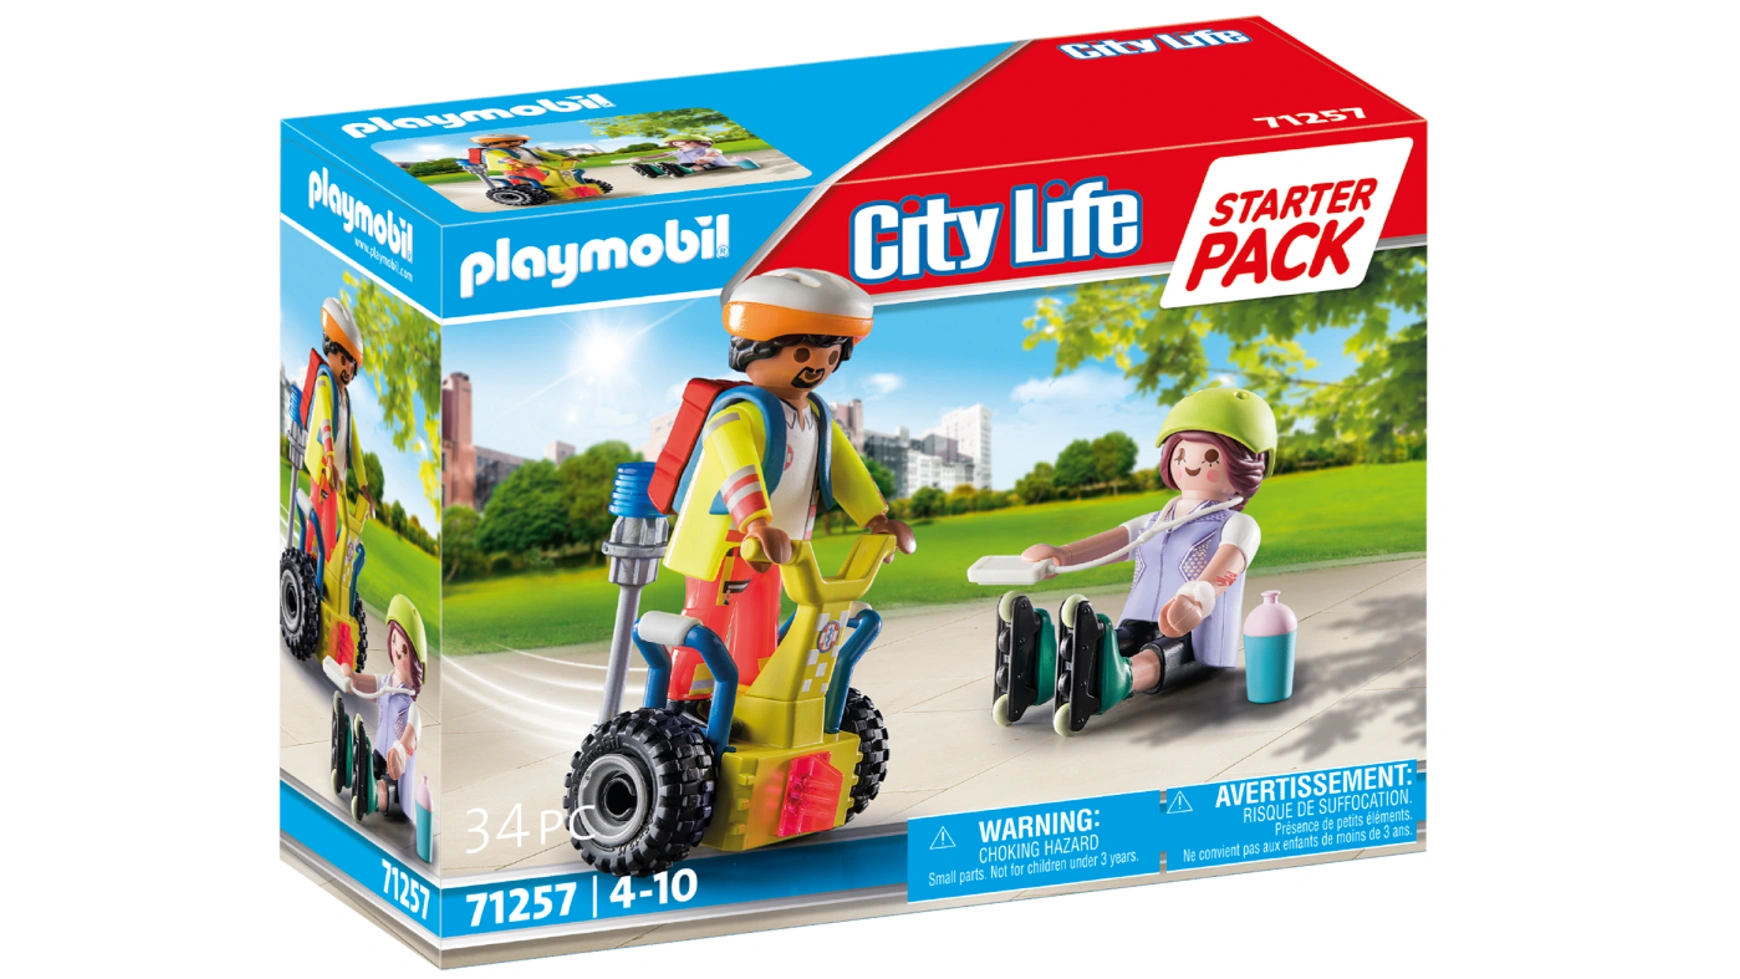 Городская жизнь стартовый пакет спасения с balance racer Playmobil врайтов олег я фельдшер